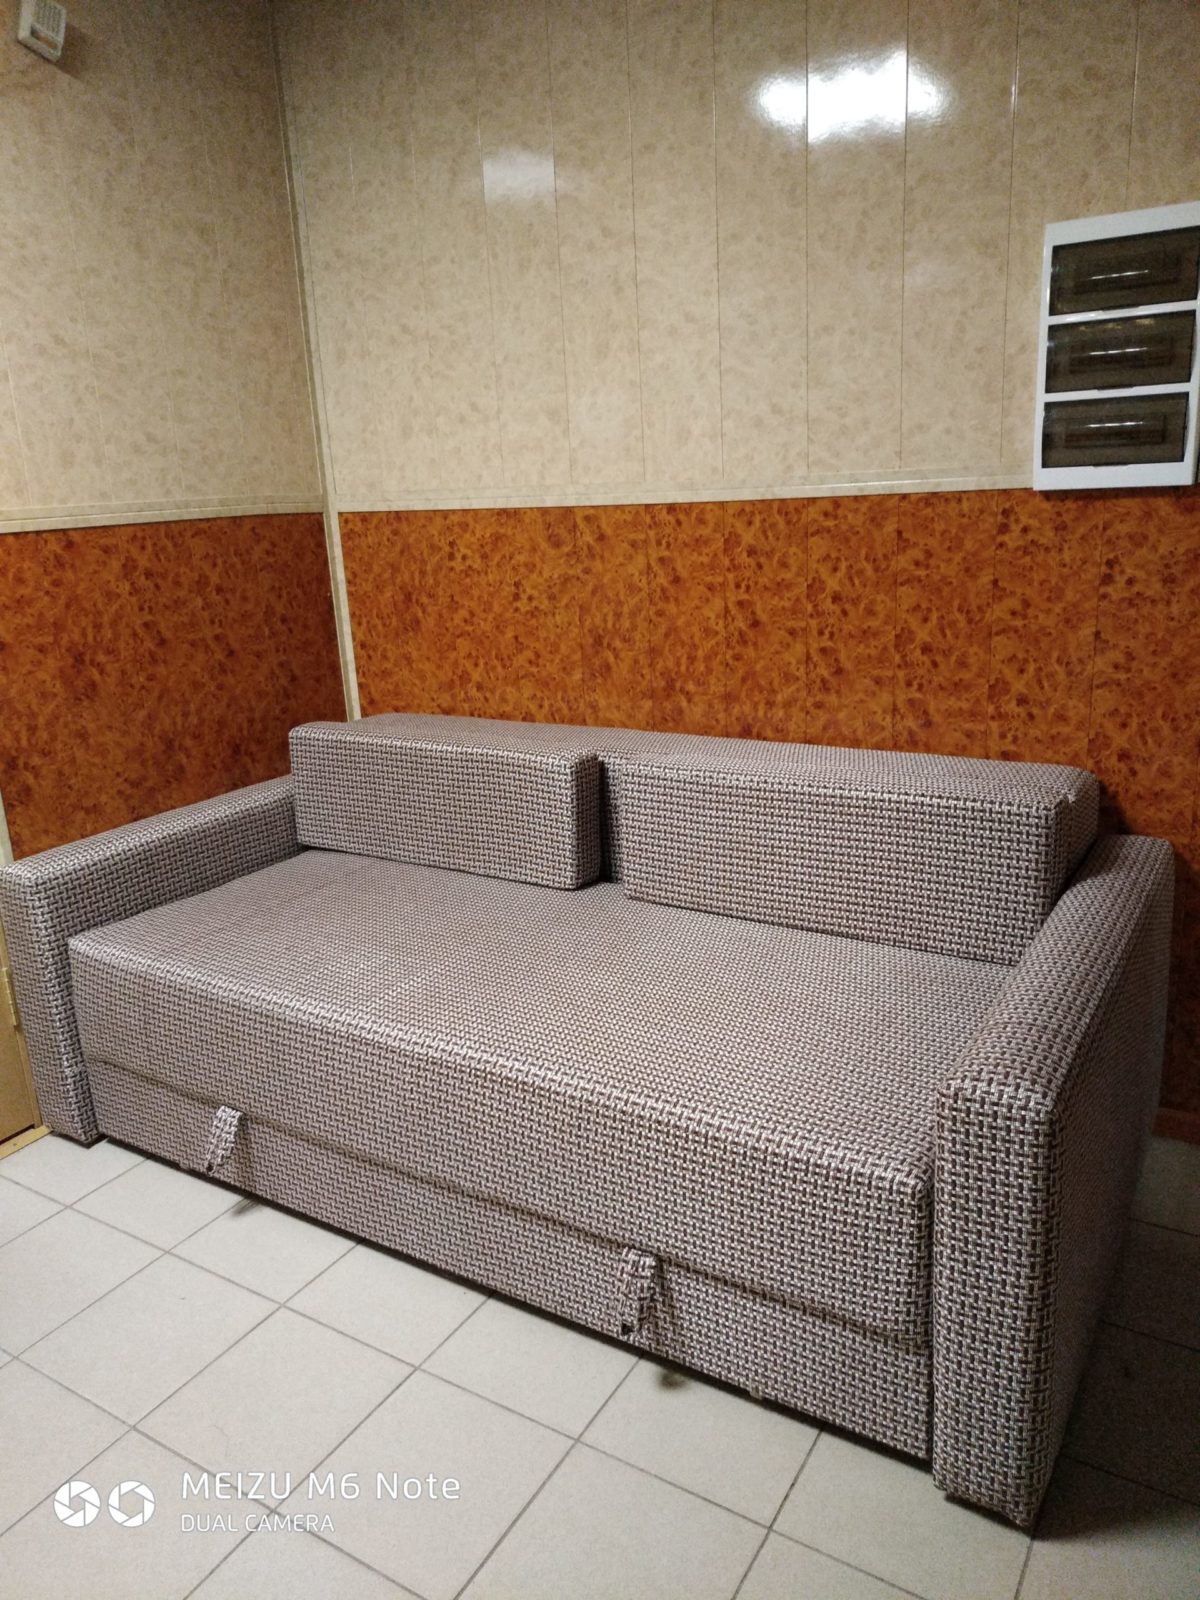 Диван выкатной 1,6 на 2 метра - МебельNora - качественная мебель подоступным ценам.